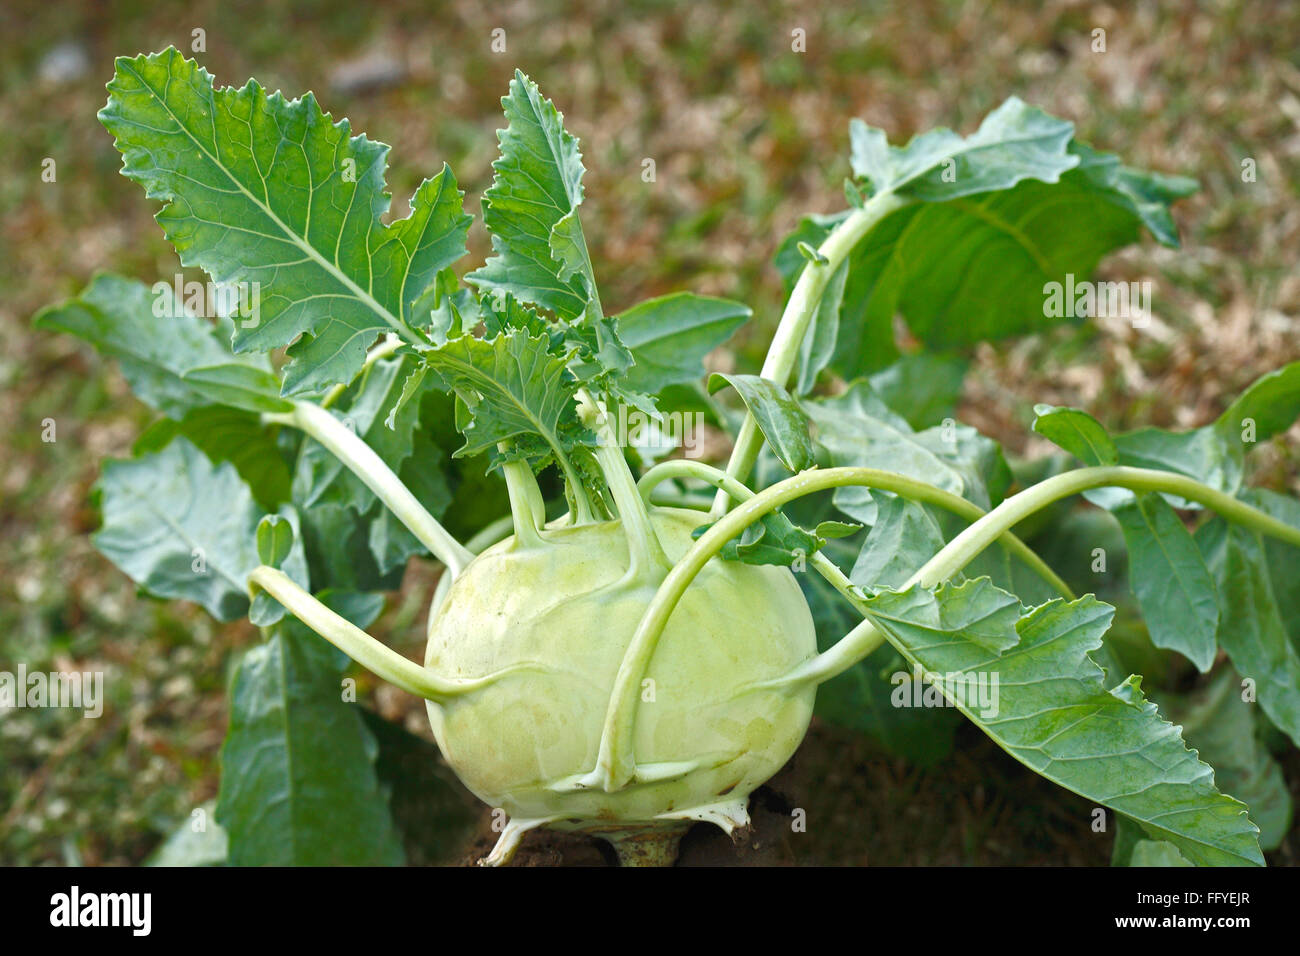 Green vegetable kohlrabies cabbage gongylodes brassica oleracea var turnip growing in field Stock Photo